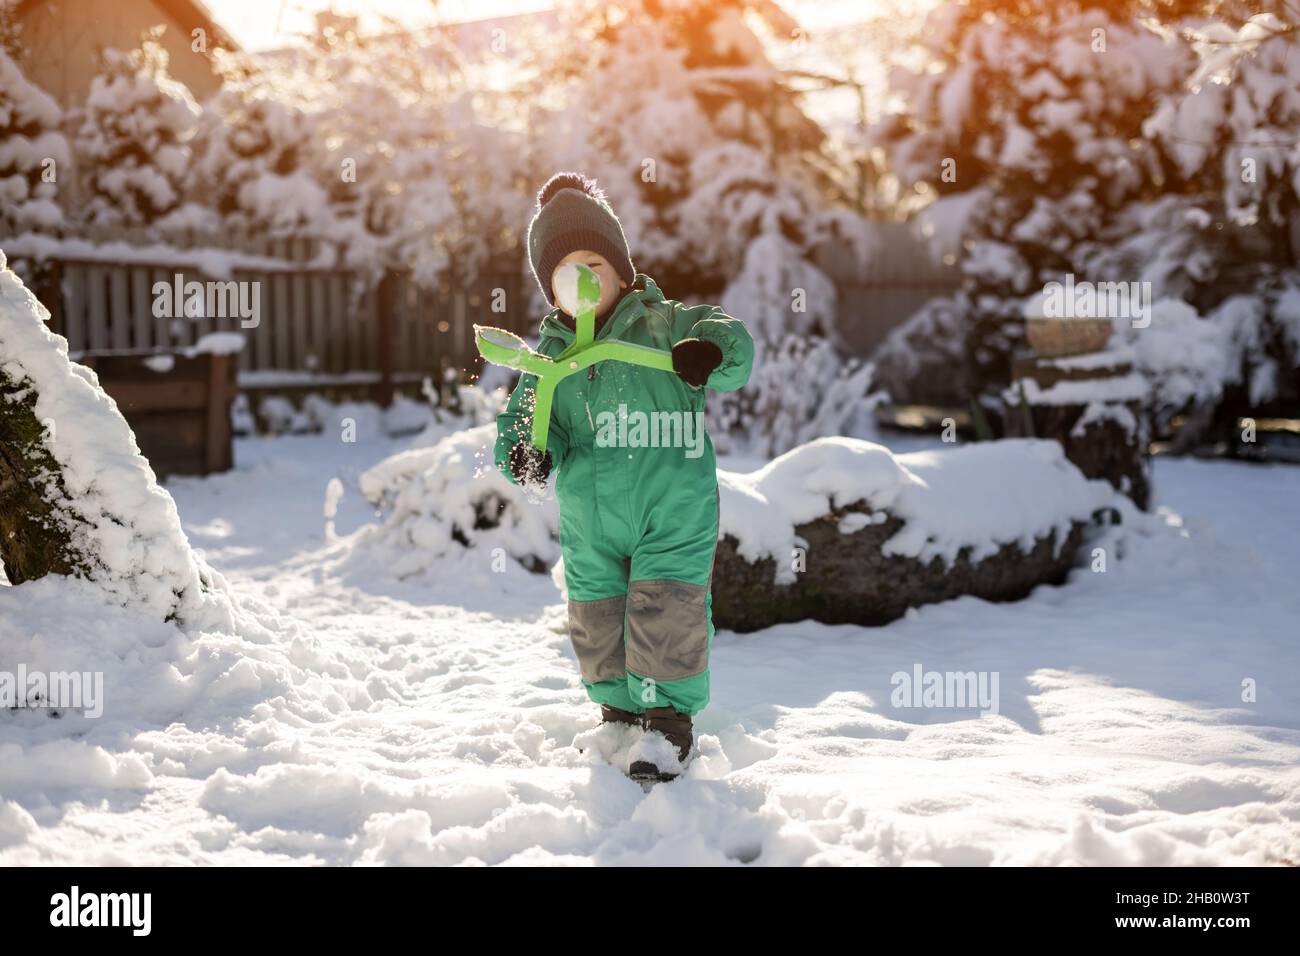 Junge spielt im Winter mit Schnee. Kleines Kind in grüner Jacke und gestricktem Hut machen an Weihnachten Schneebälle in der Nähe des Hauses. Kinder spielen und Spaß haben im verschneiten Garten Stockfoto